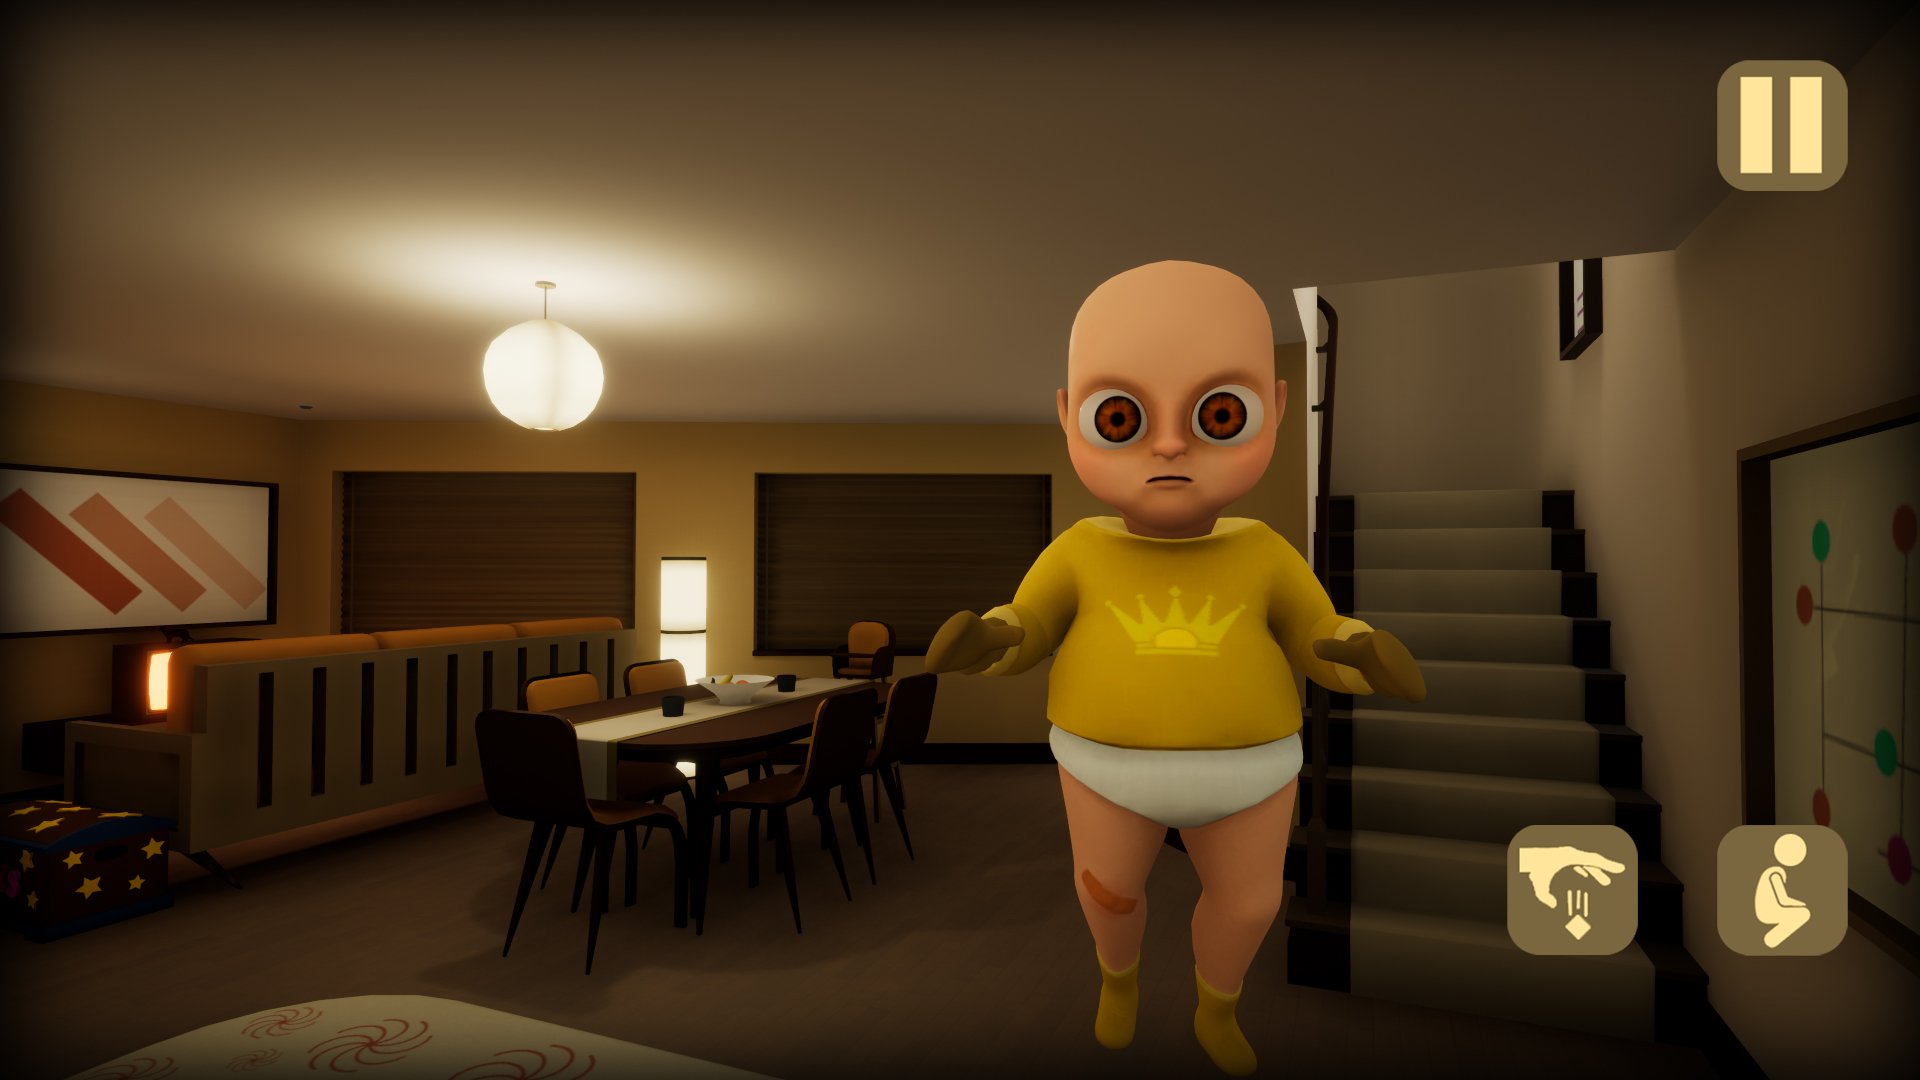 Малыш в желтом робот